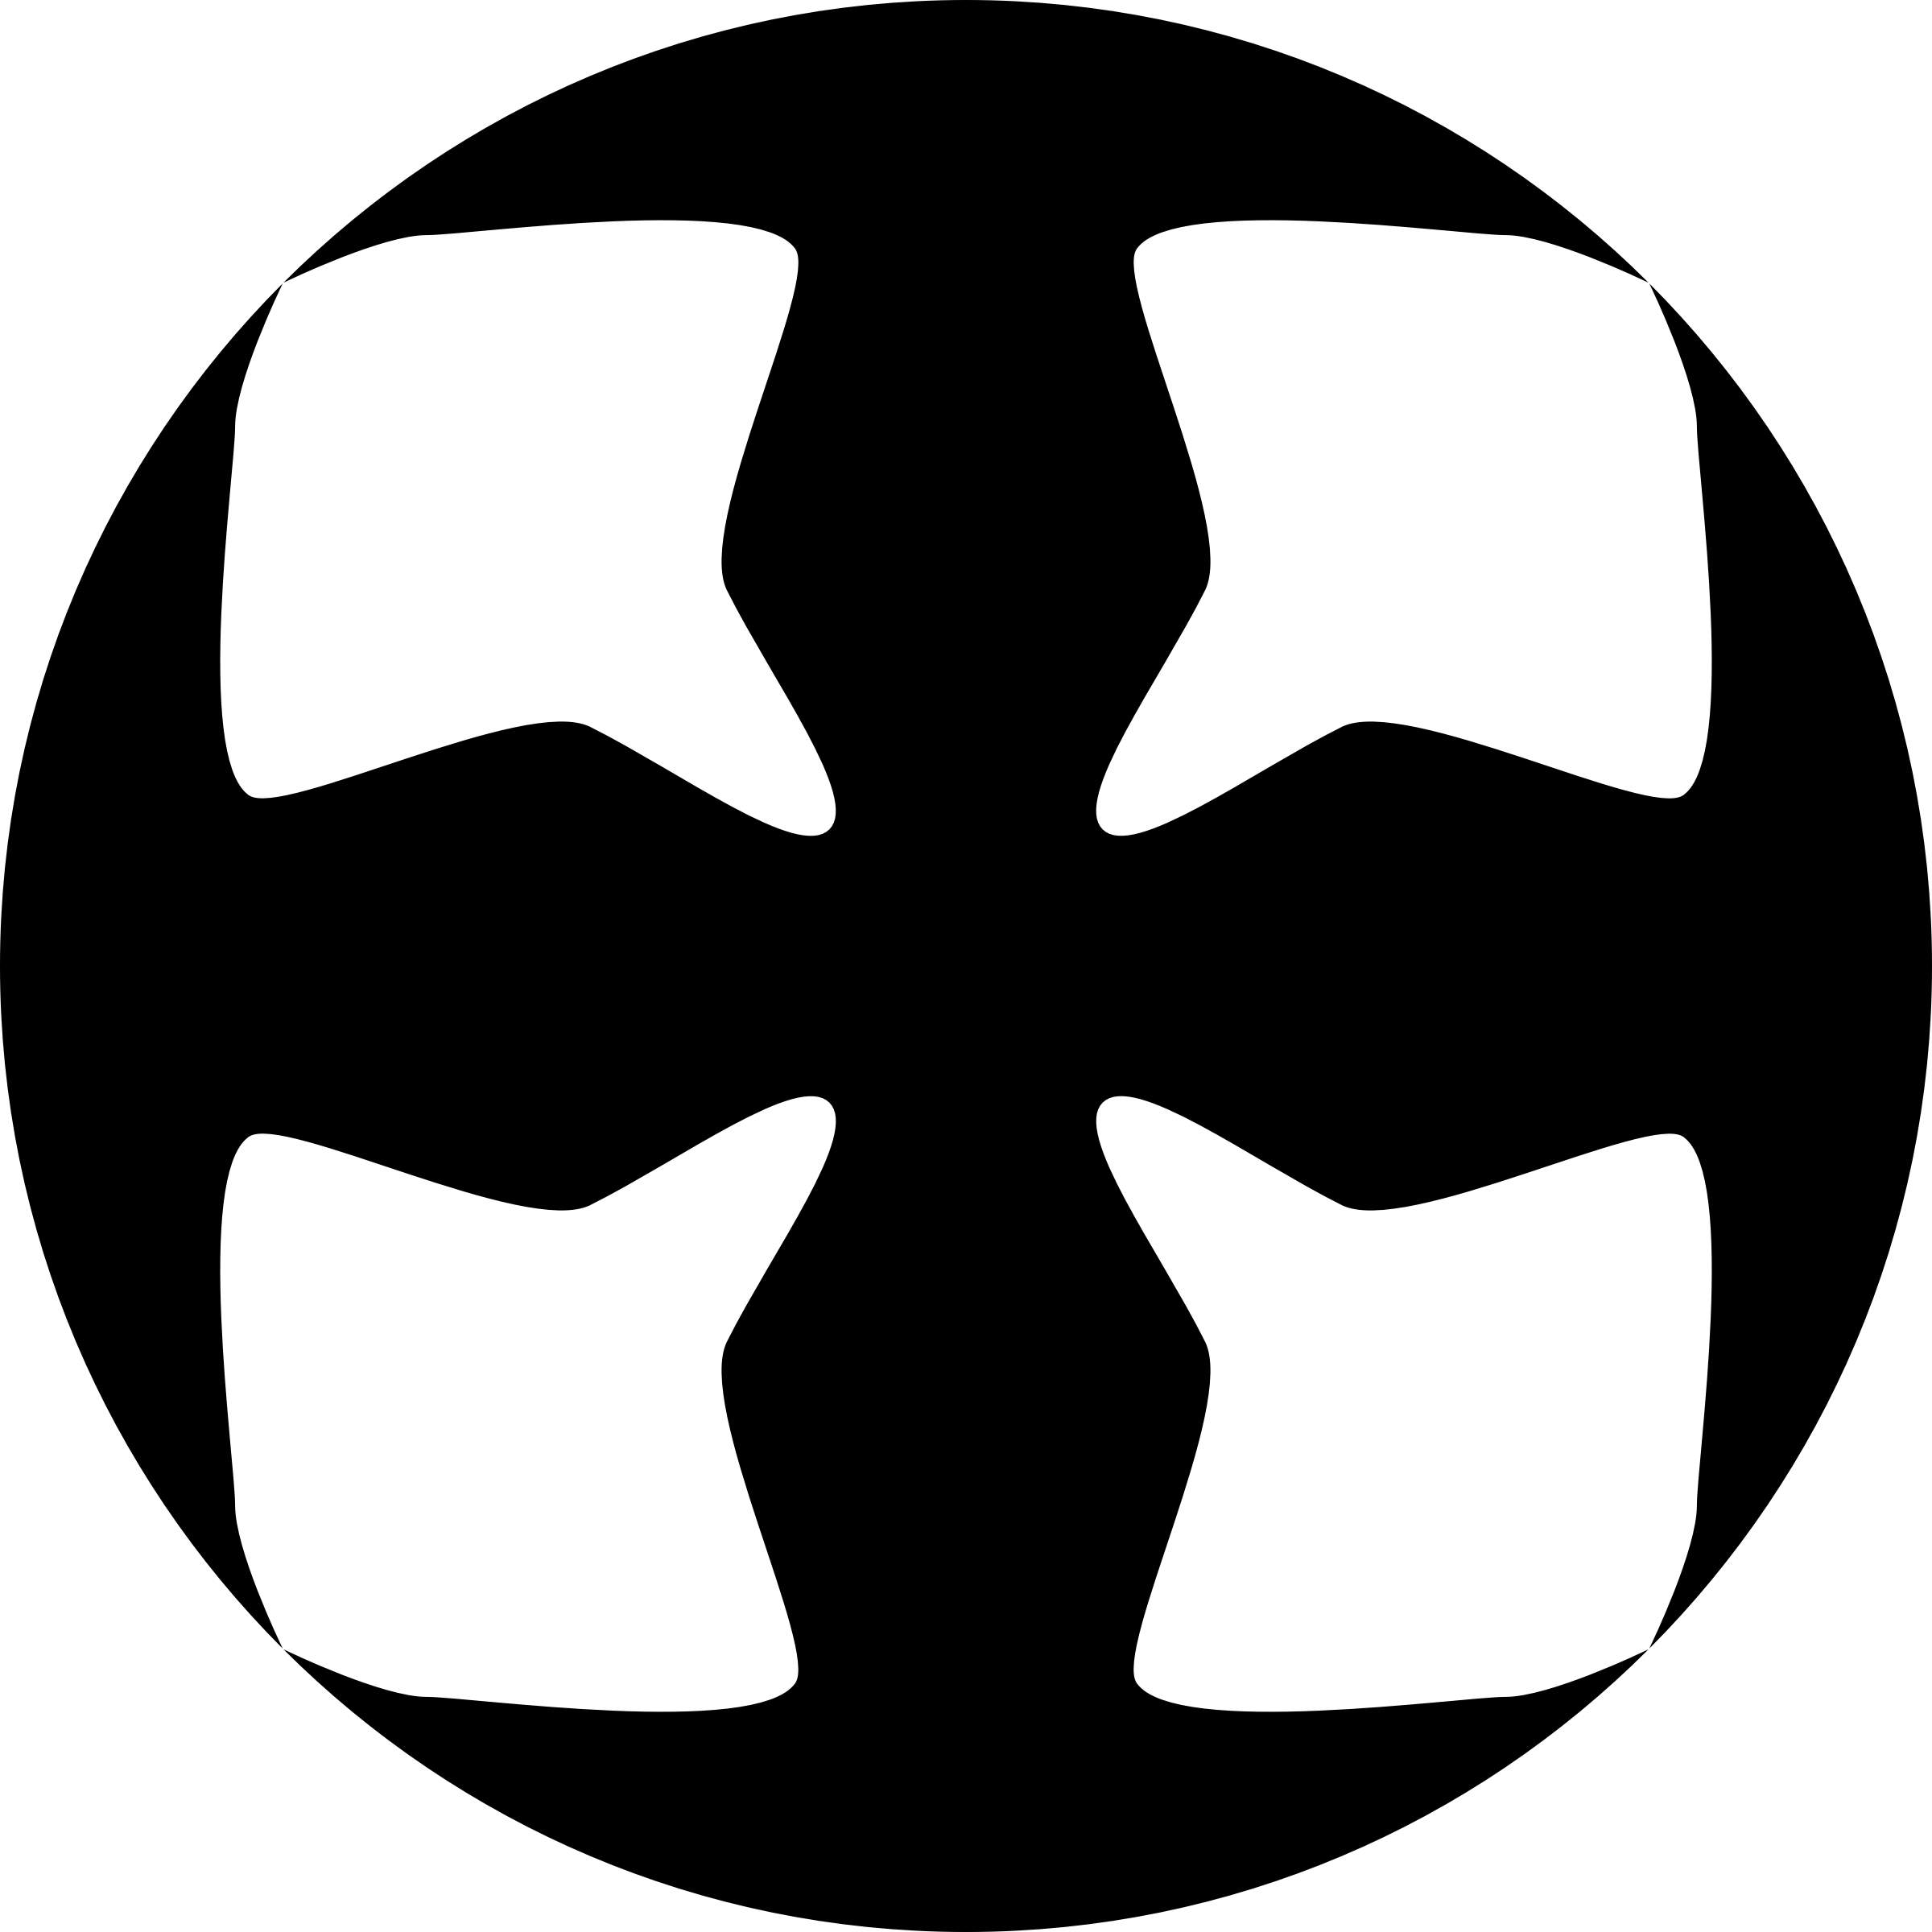 Cross Lxxiv - Emblem (2400x2400)